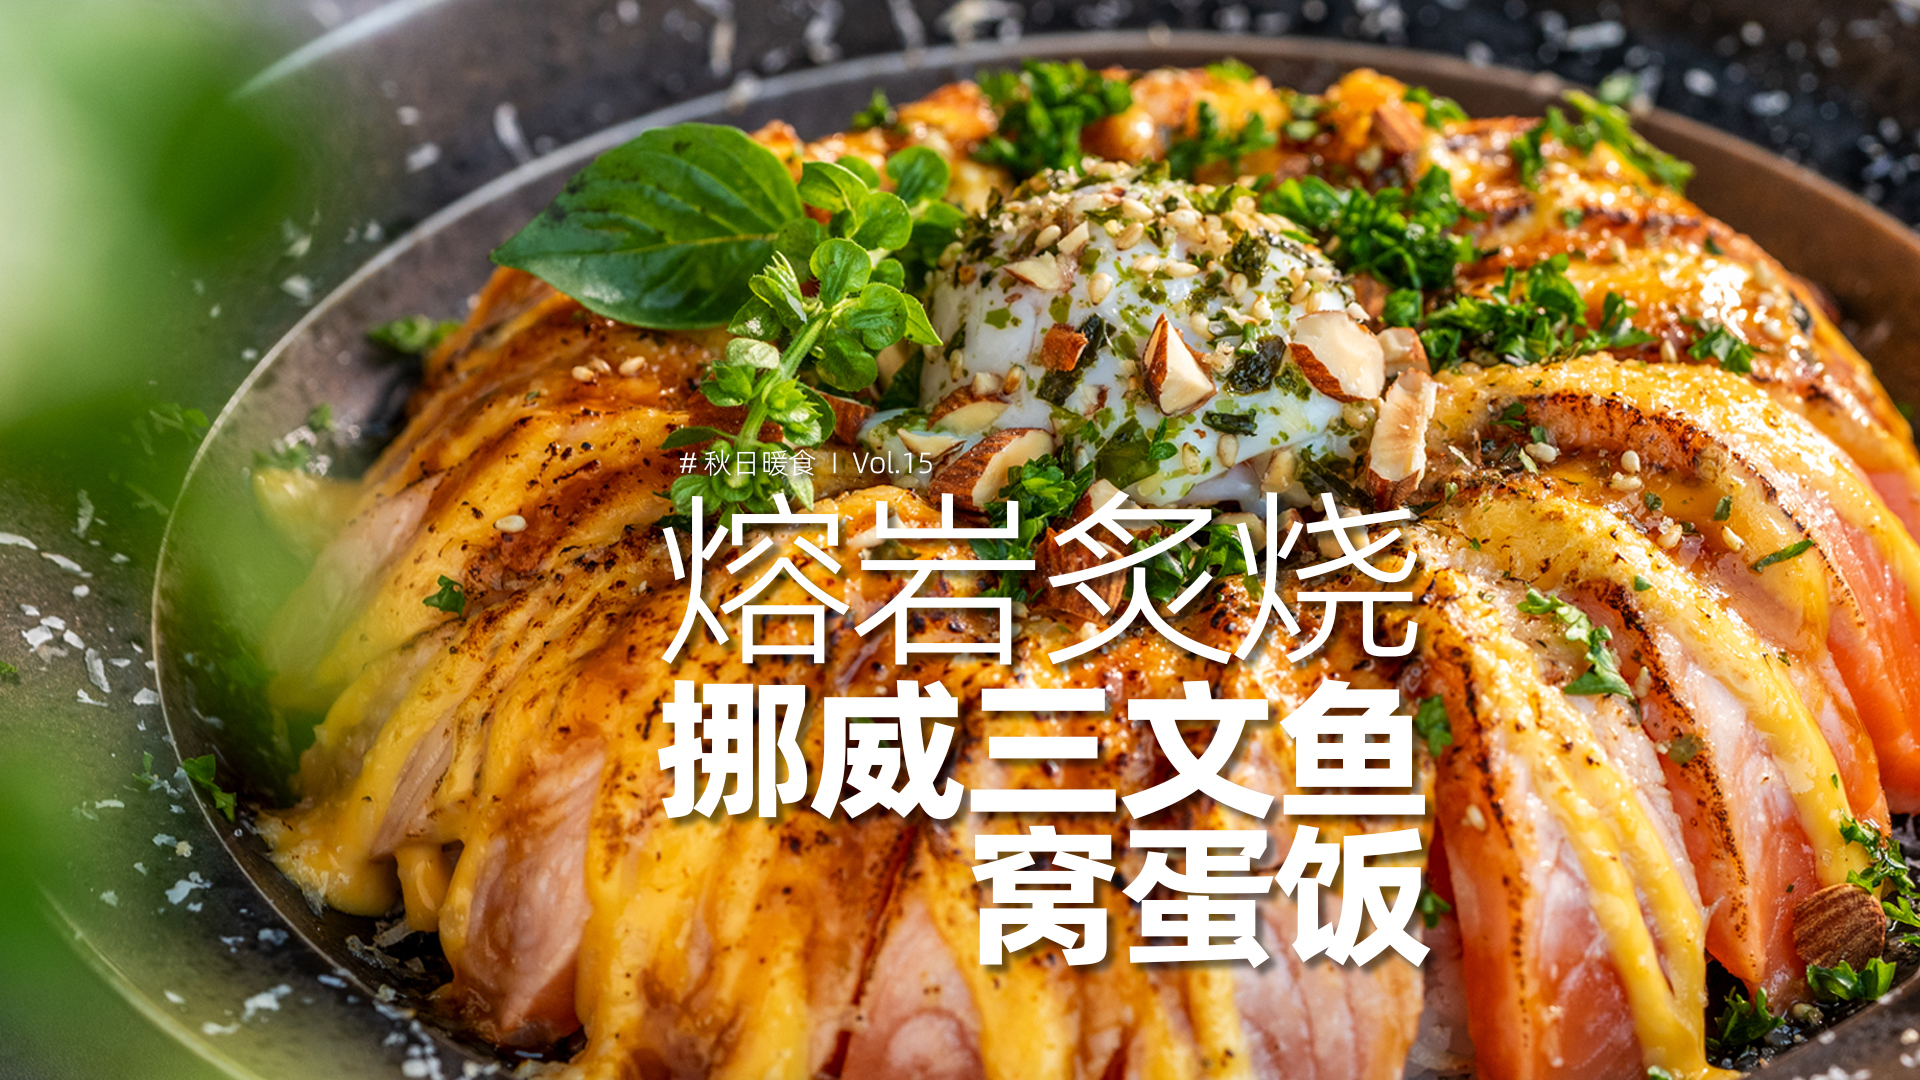 日料店的熔岩三文鱼饭在家怎么做？